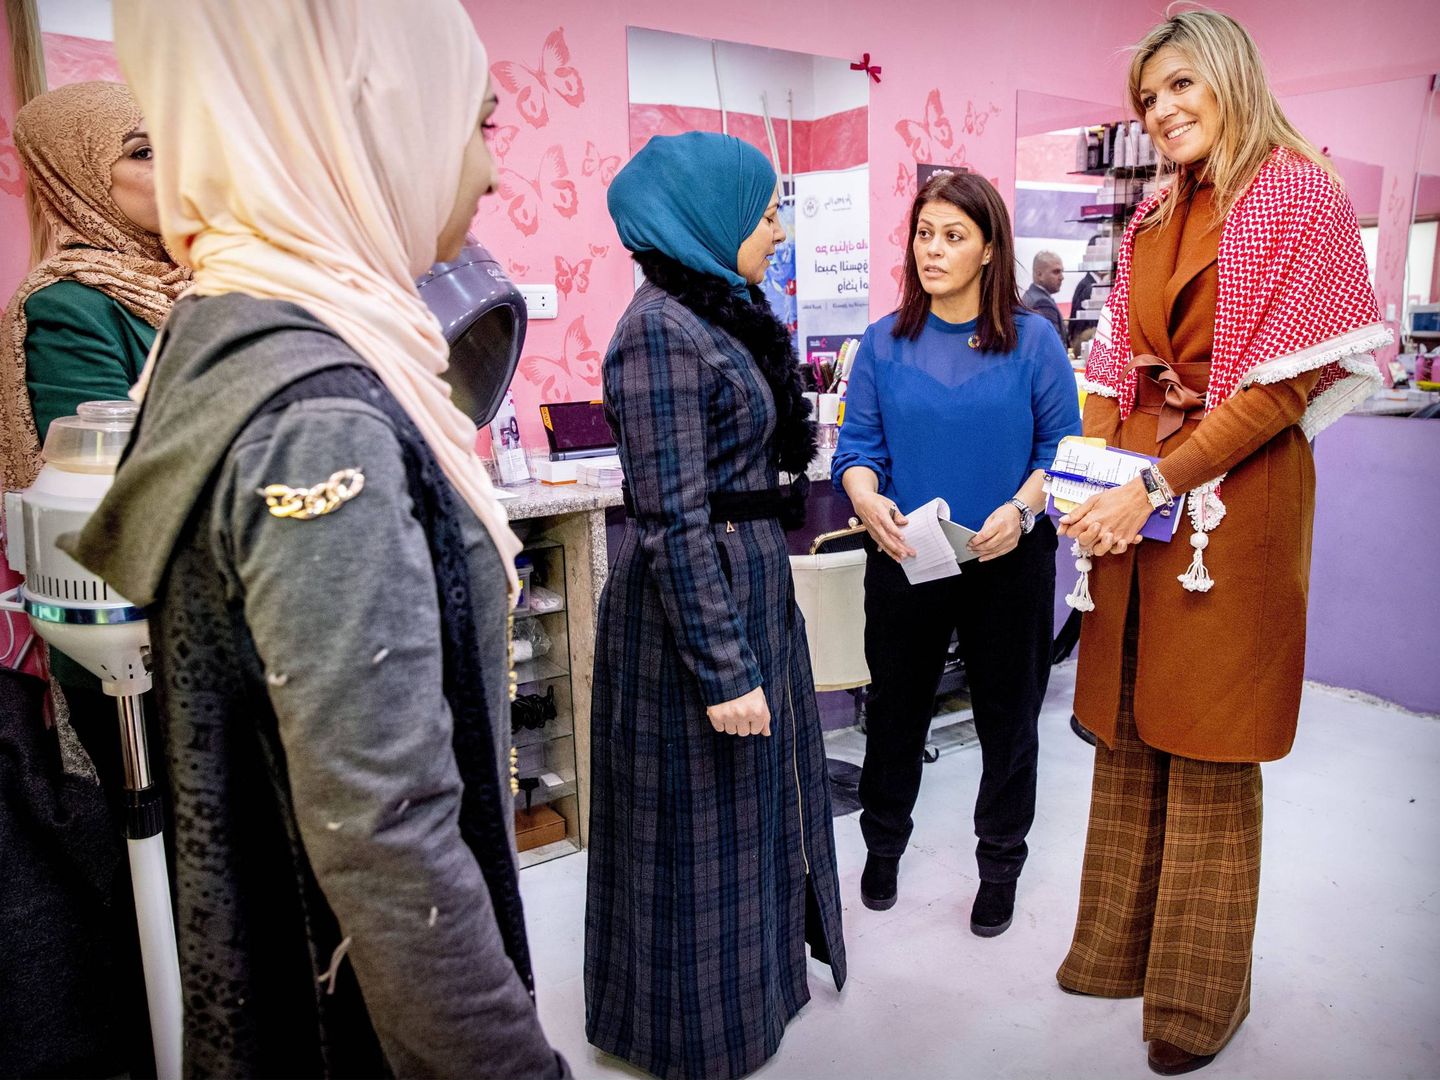 La reina Máxima durante su visita a mujeres empresarias en Zarqa. (Cordon Press)